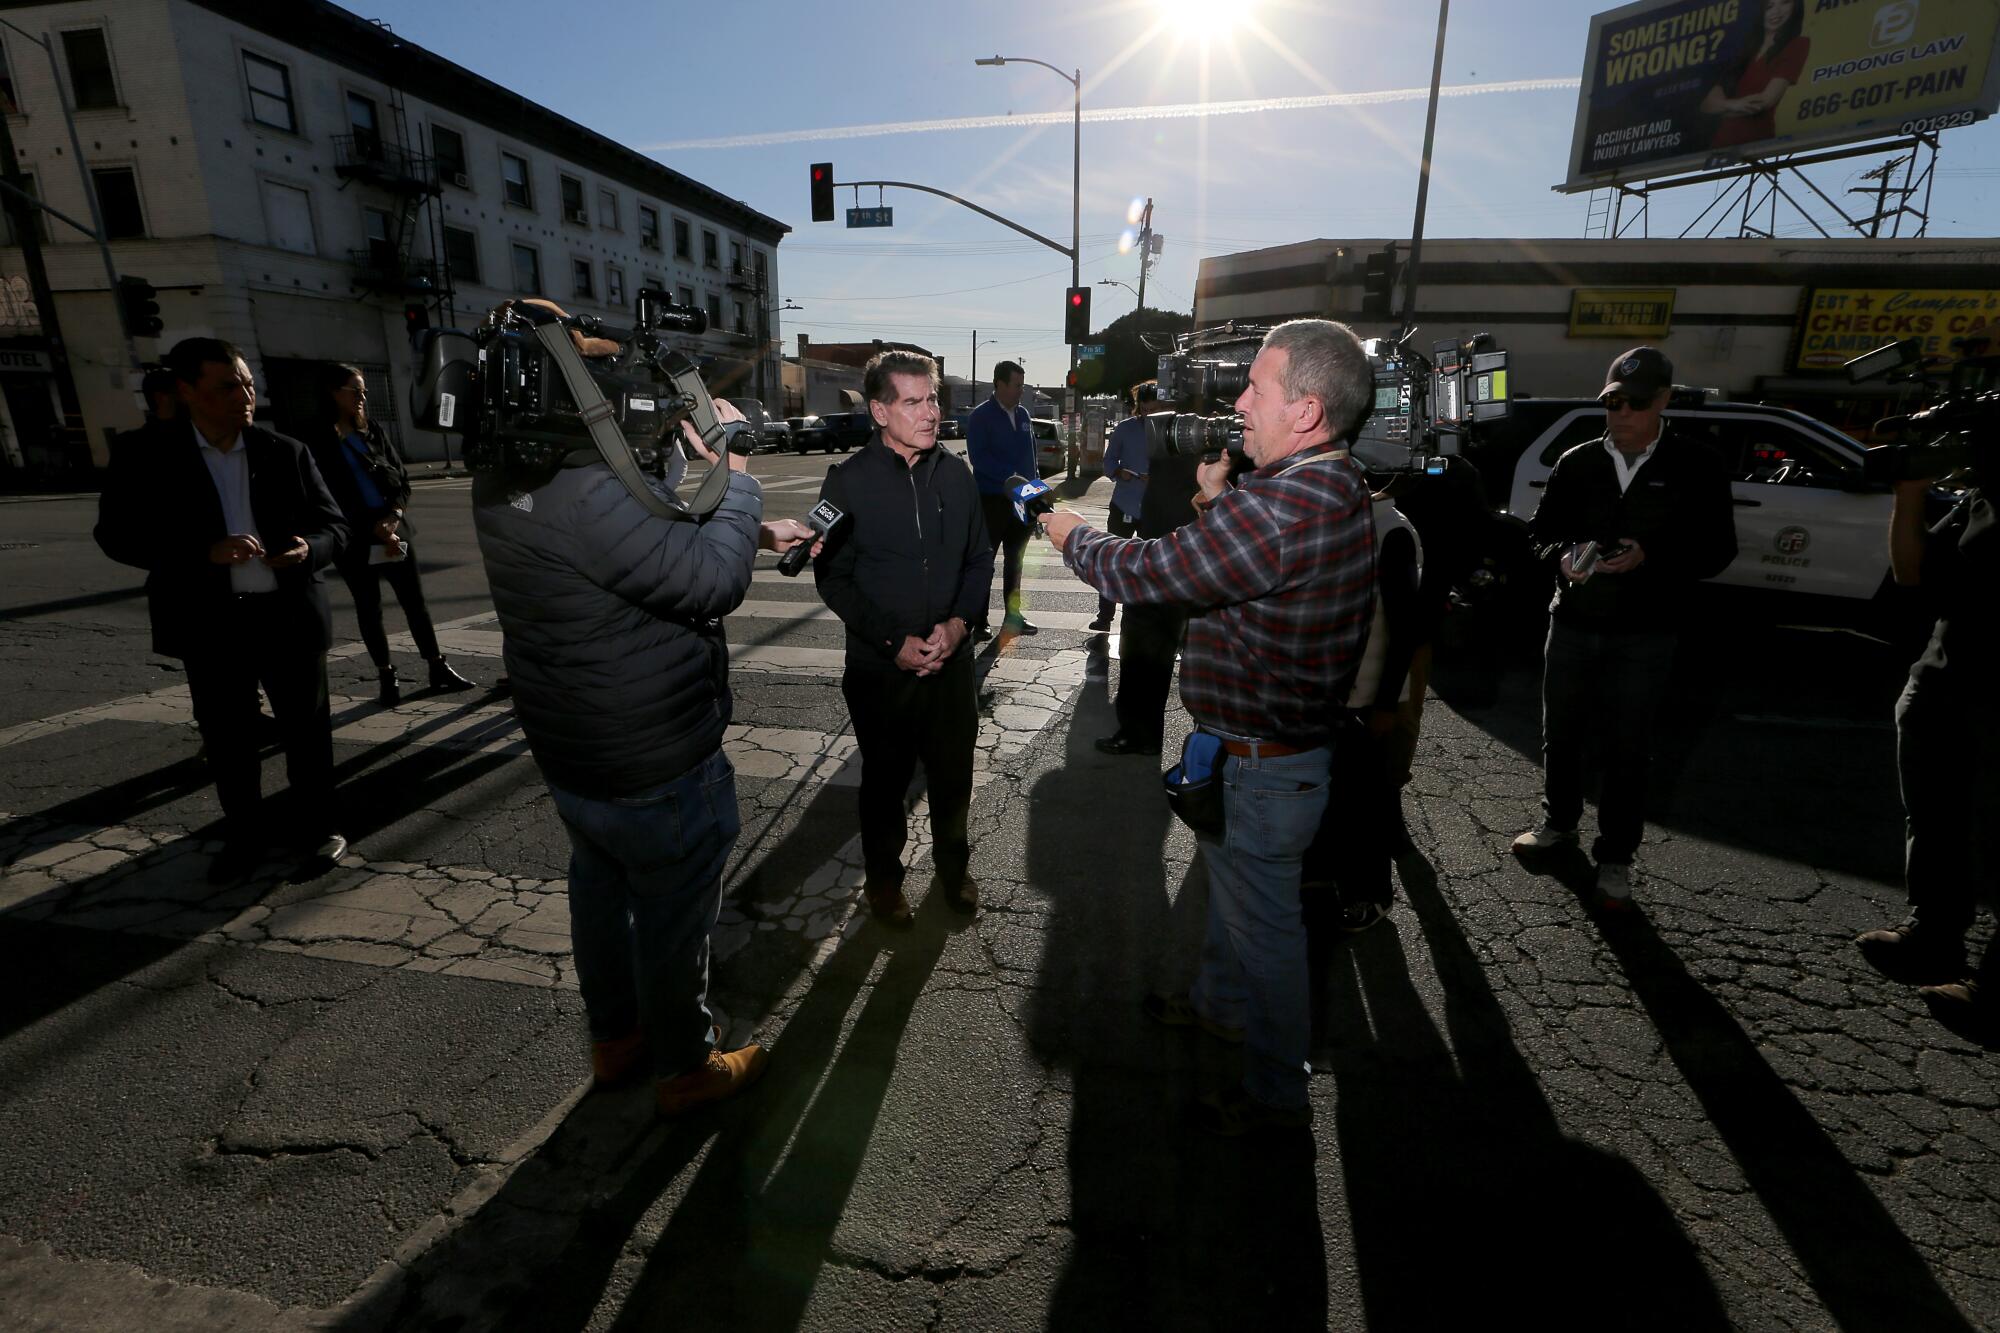 新闻摄像机跟踪道奇队伟大球员史蒂夫·加维访问洛杉矶贫民窟期间。